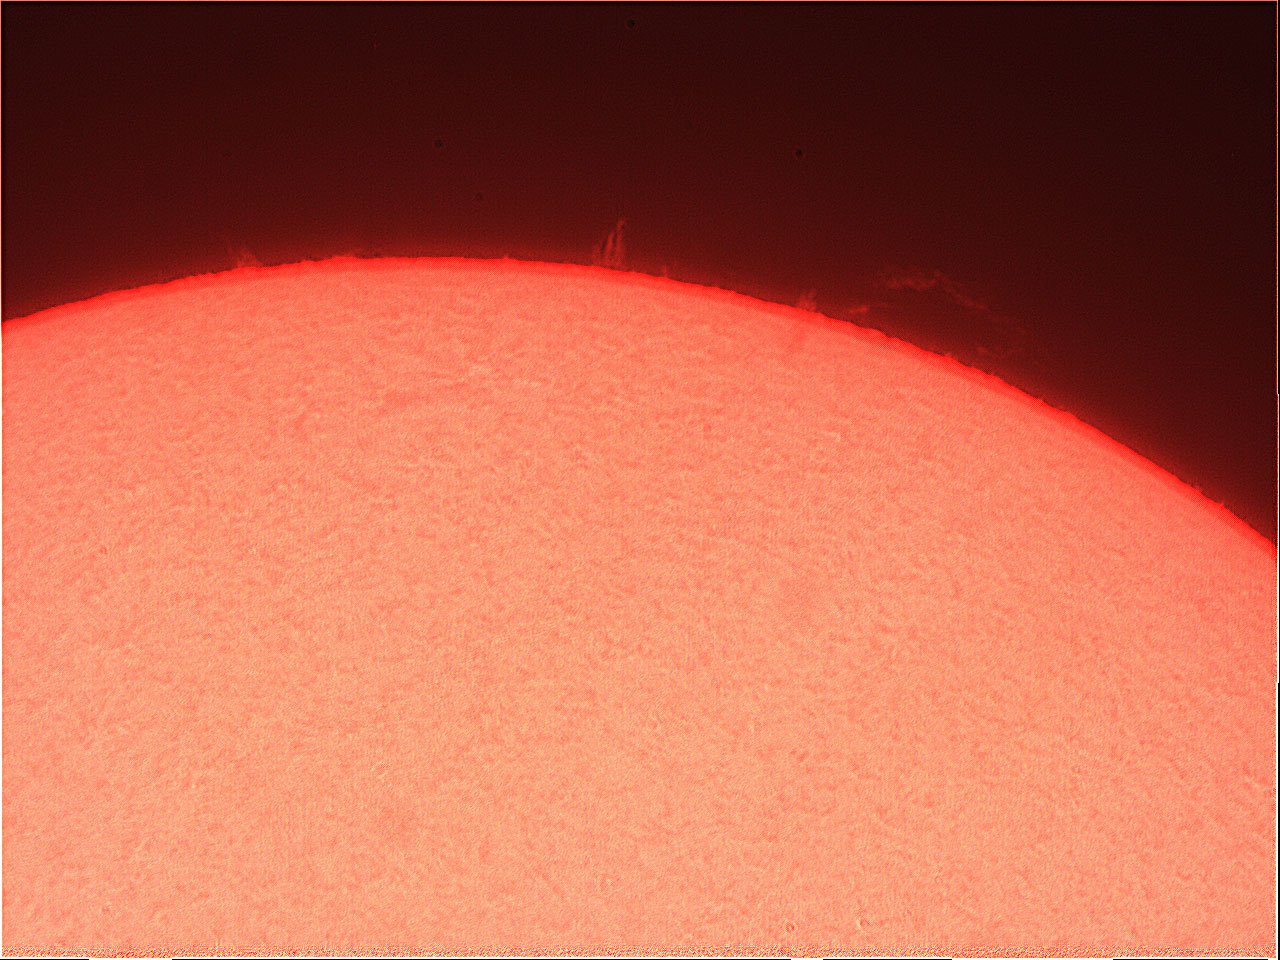 Prominence-151221-vid347.jpg